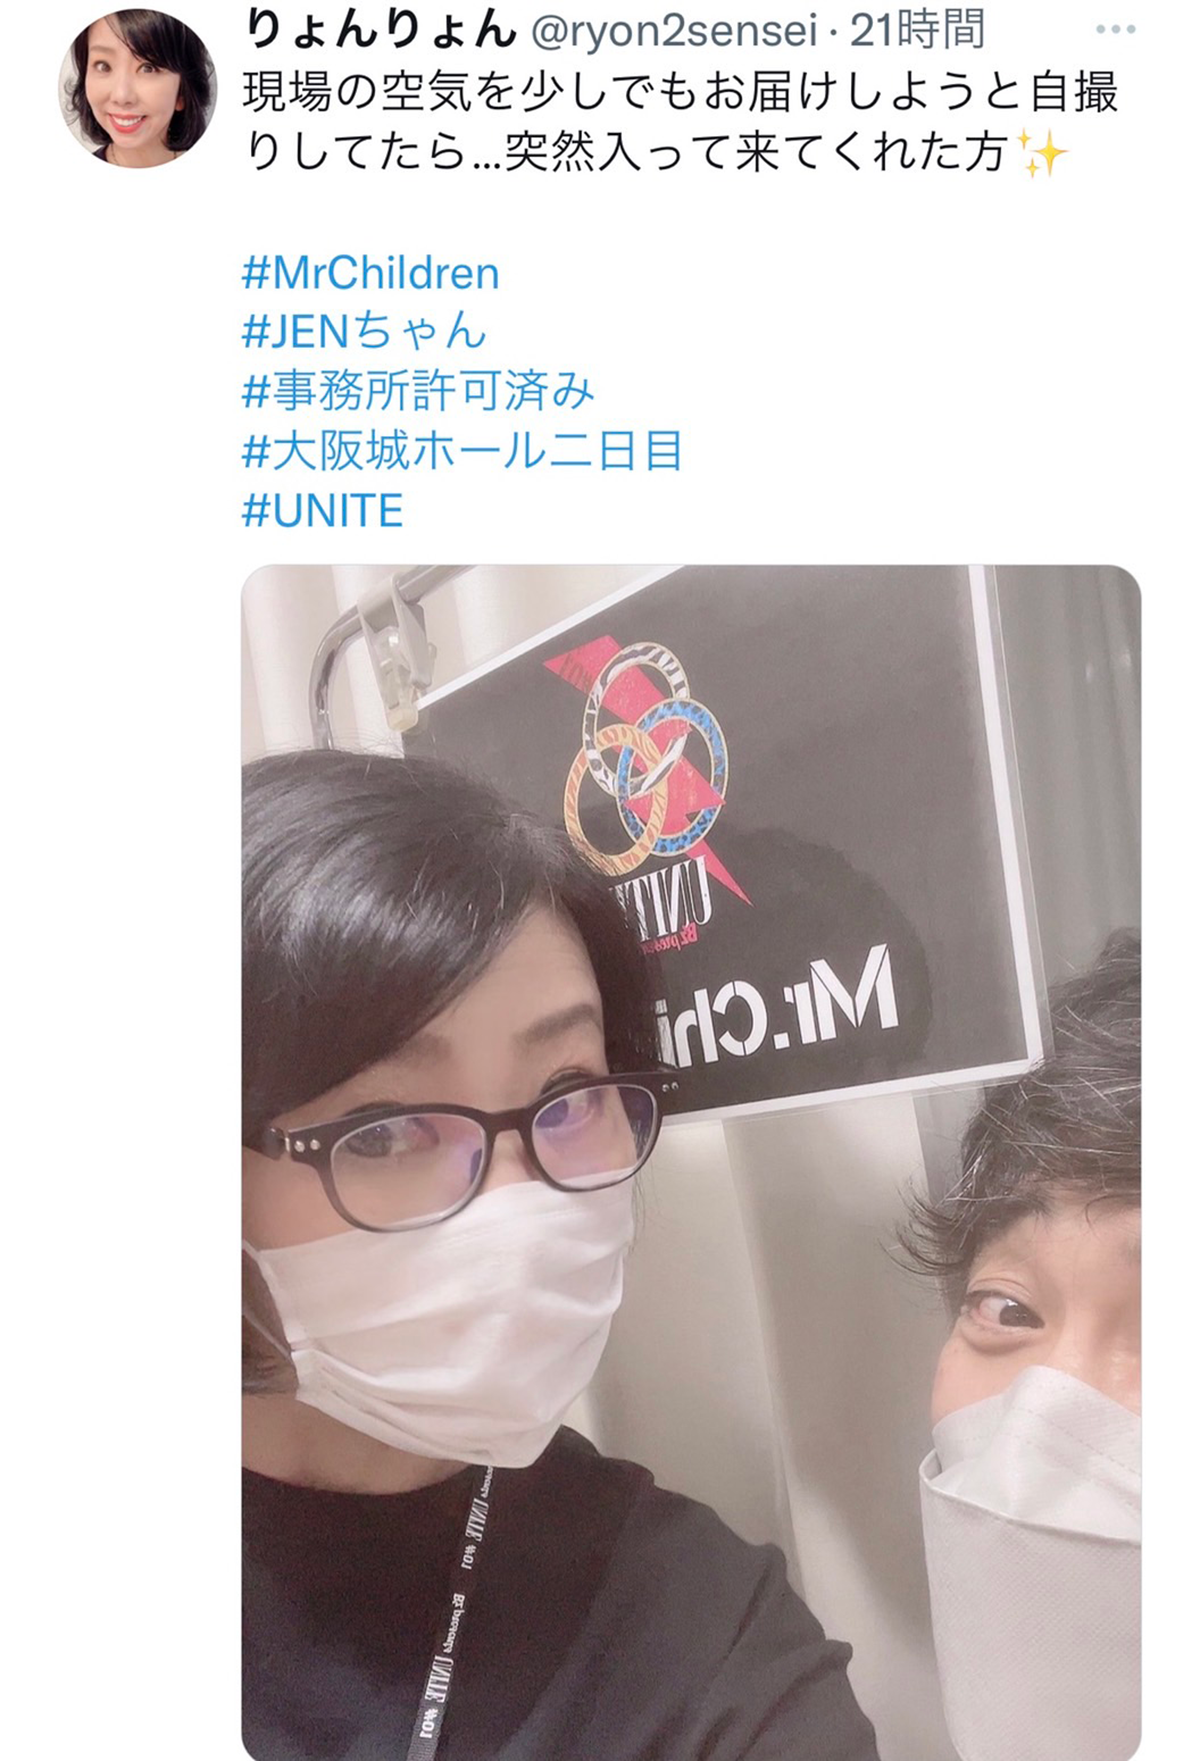 『B'z presents UNITE #01』のバックステージで撮影されたと思われる佐藤涼子とミスチル・鈴木英哉の写真